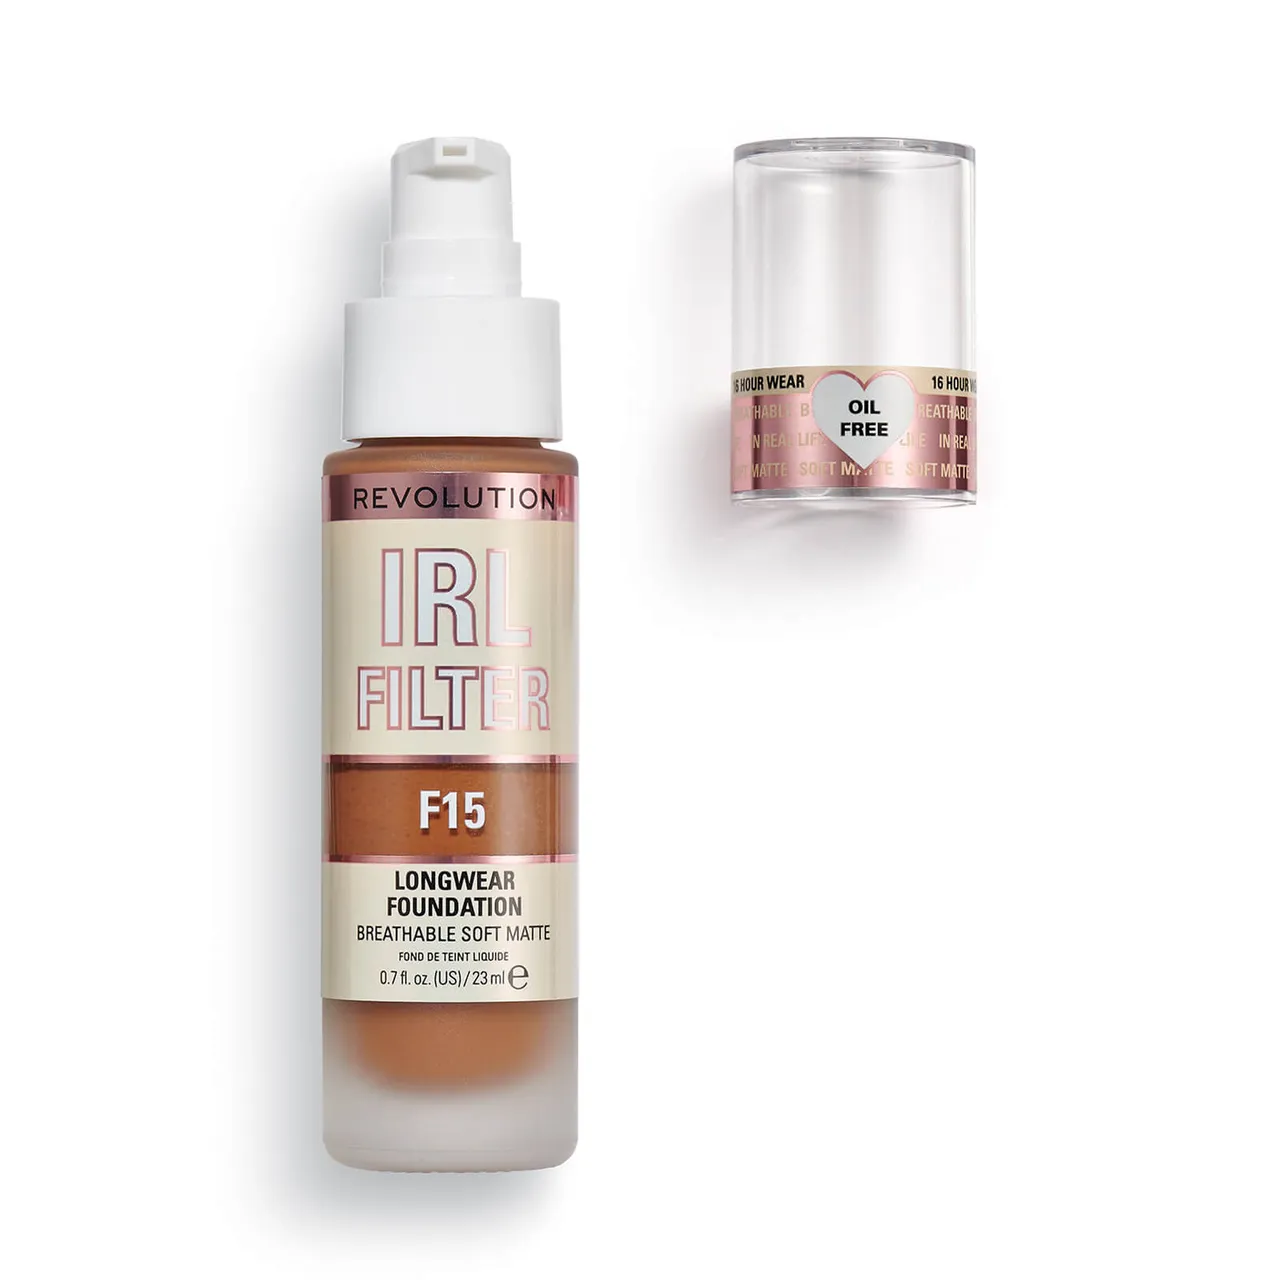 Makeup Revolution IRL Filter Longwear Foundation 23ml (Various Shades) - F15